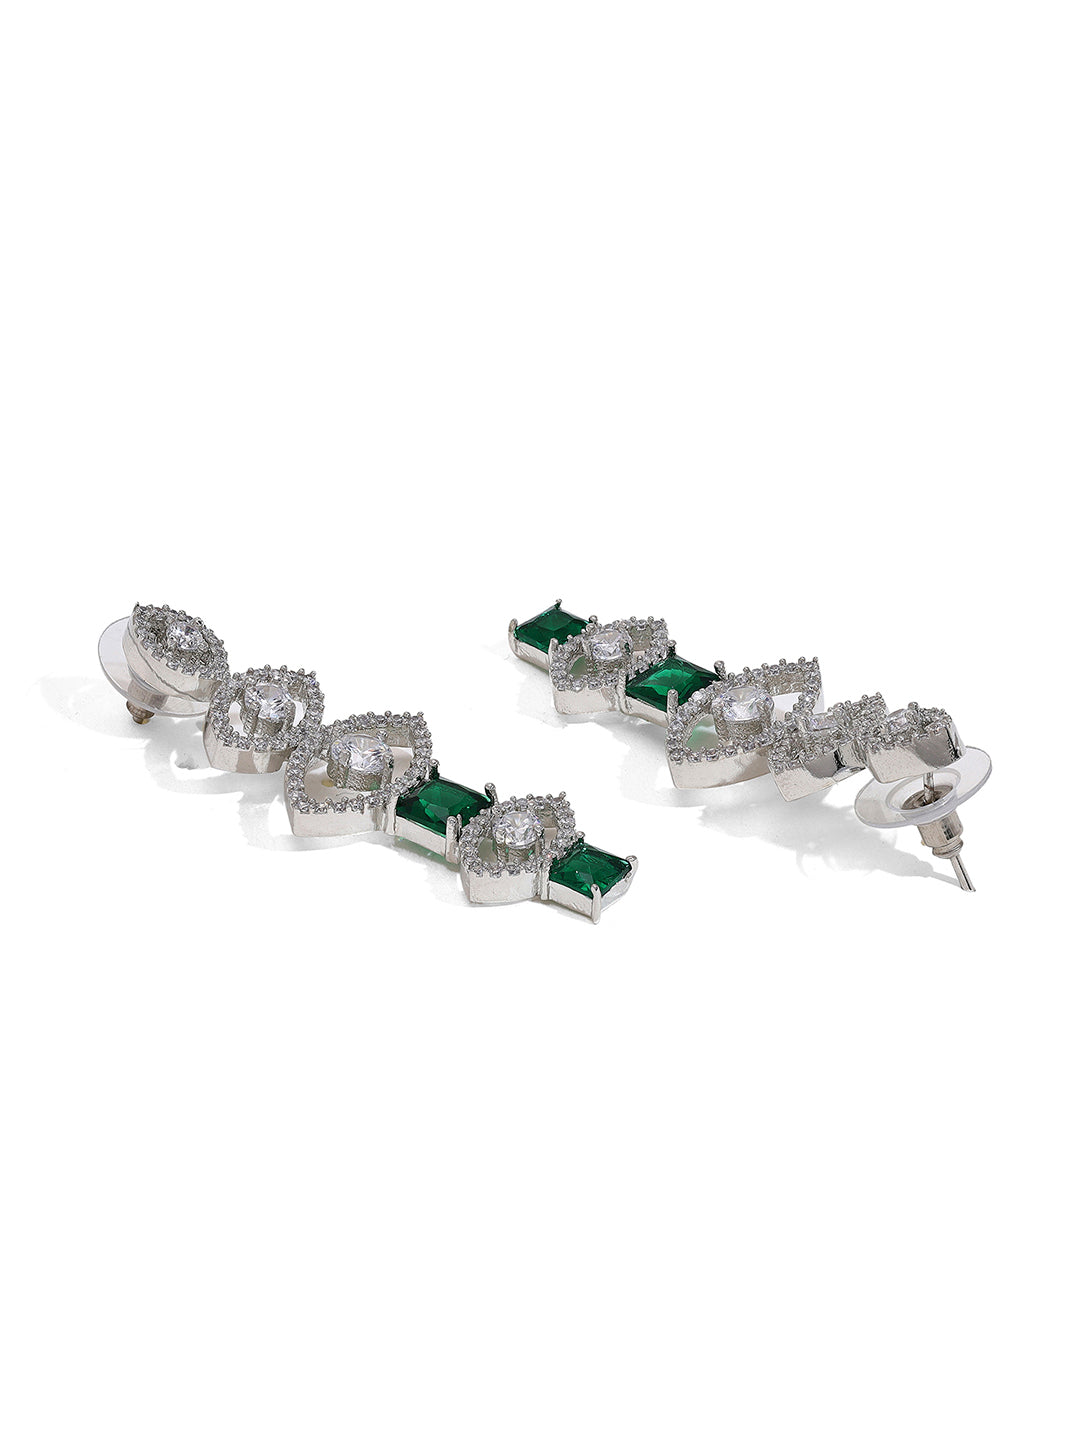 Priyaasi Silver-Plated American Diamond Jewellery Set in Stunning Green Earring